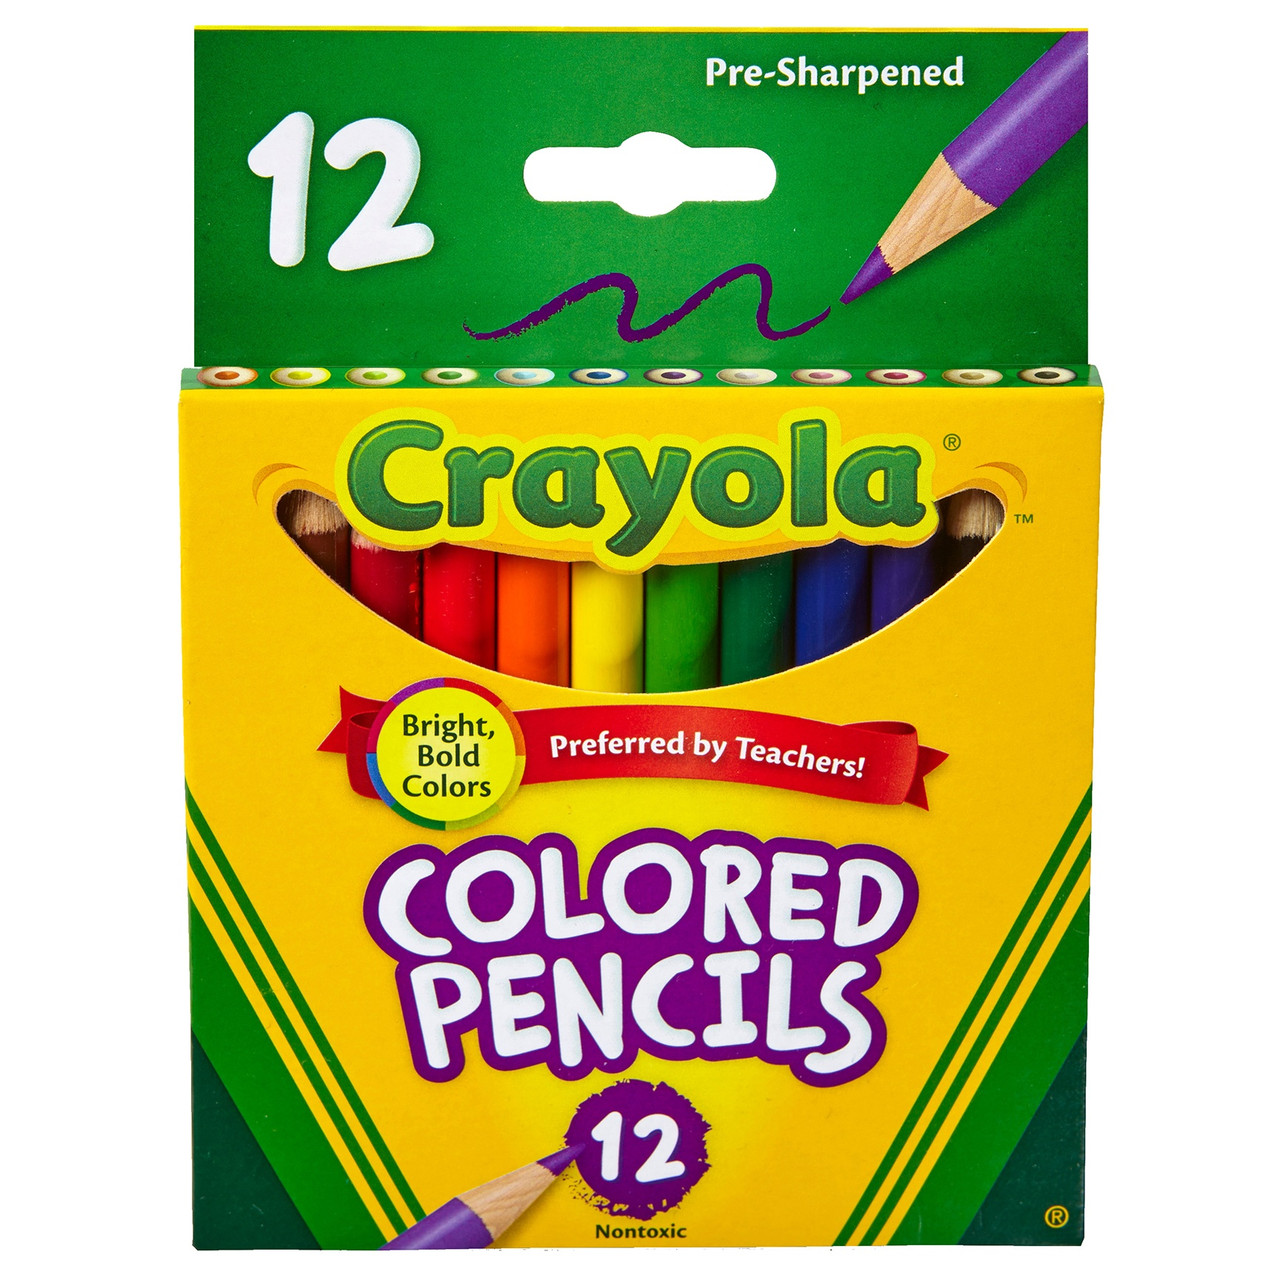 Crayola Metallic Crayons 12/pk